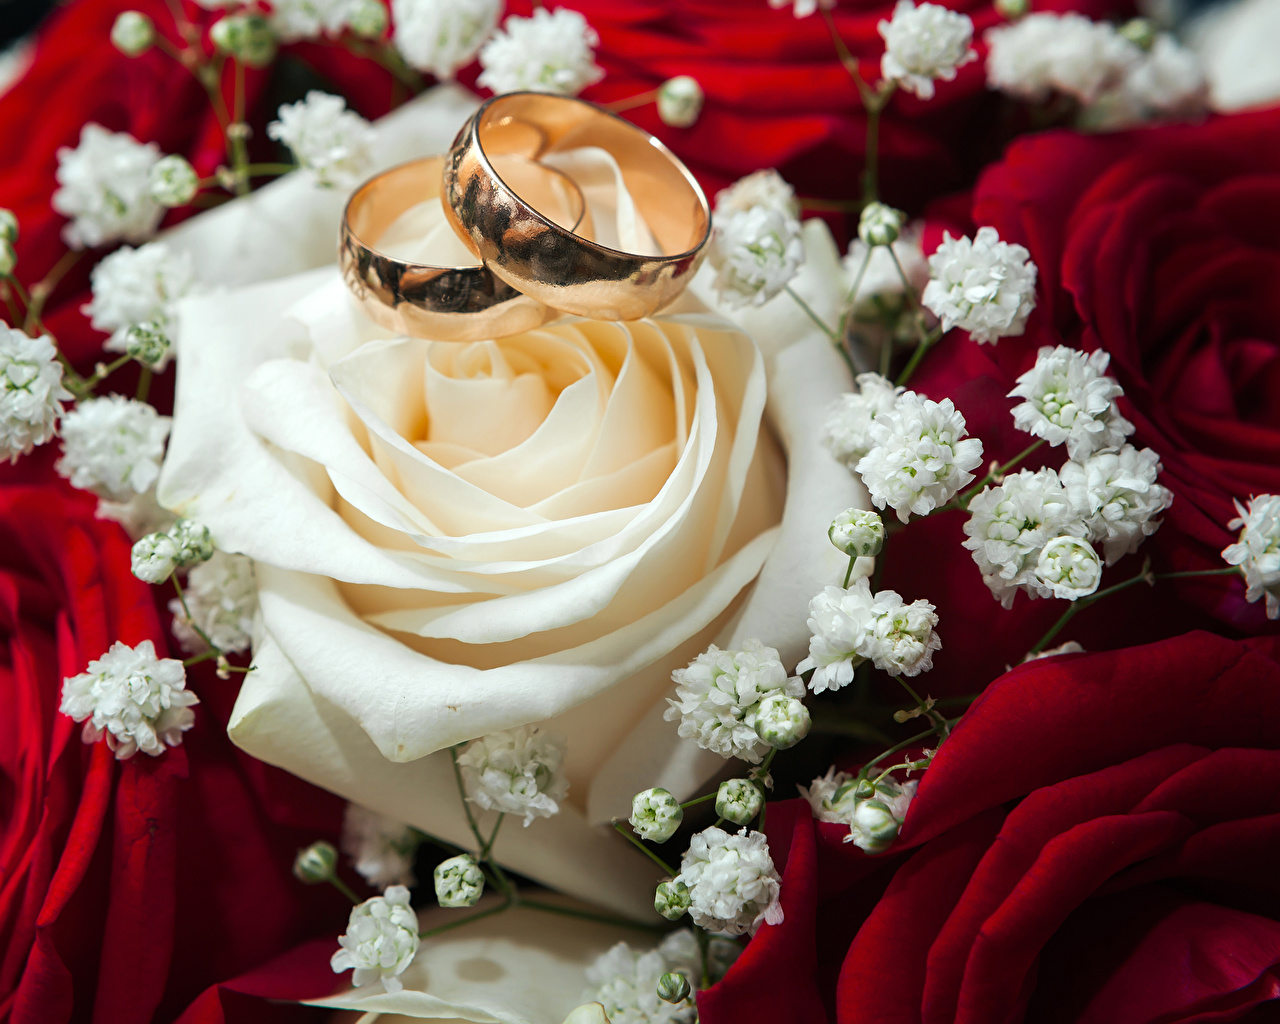 Свадебные цветы с кольцами